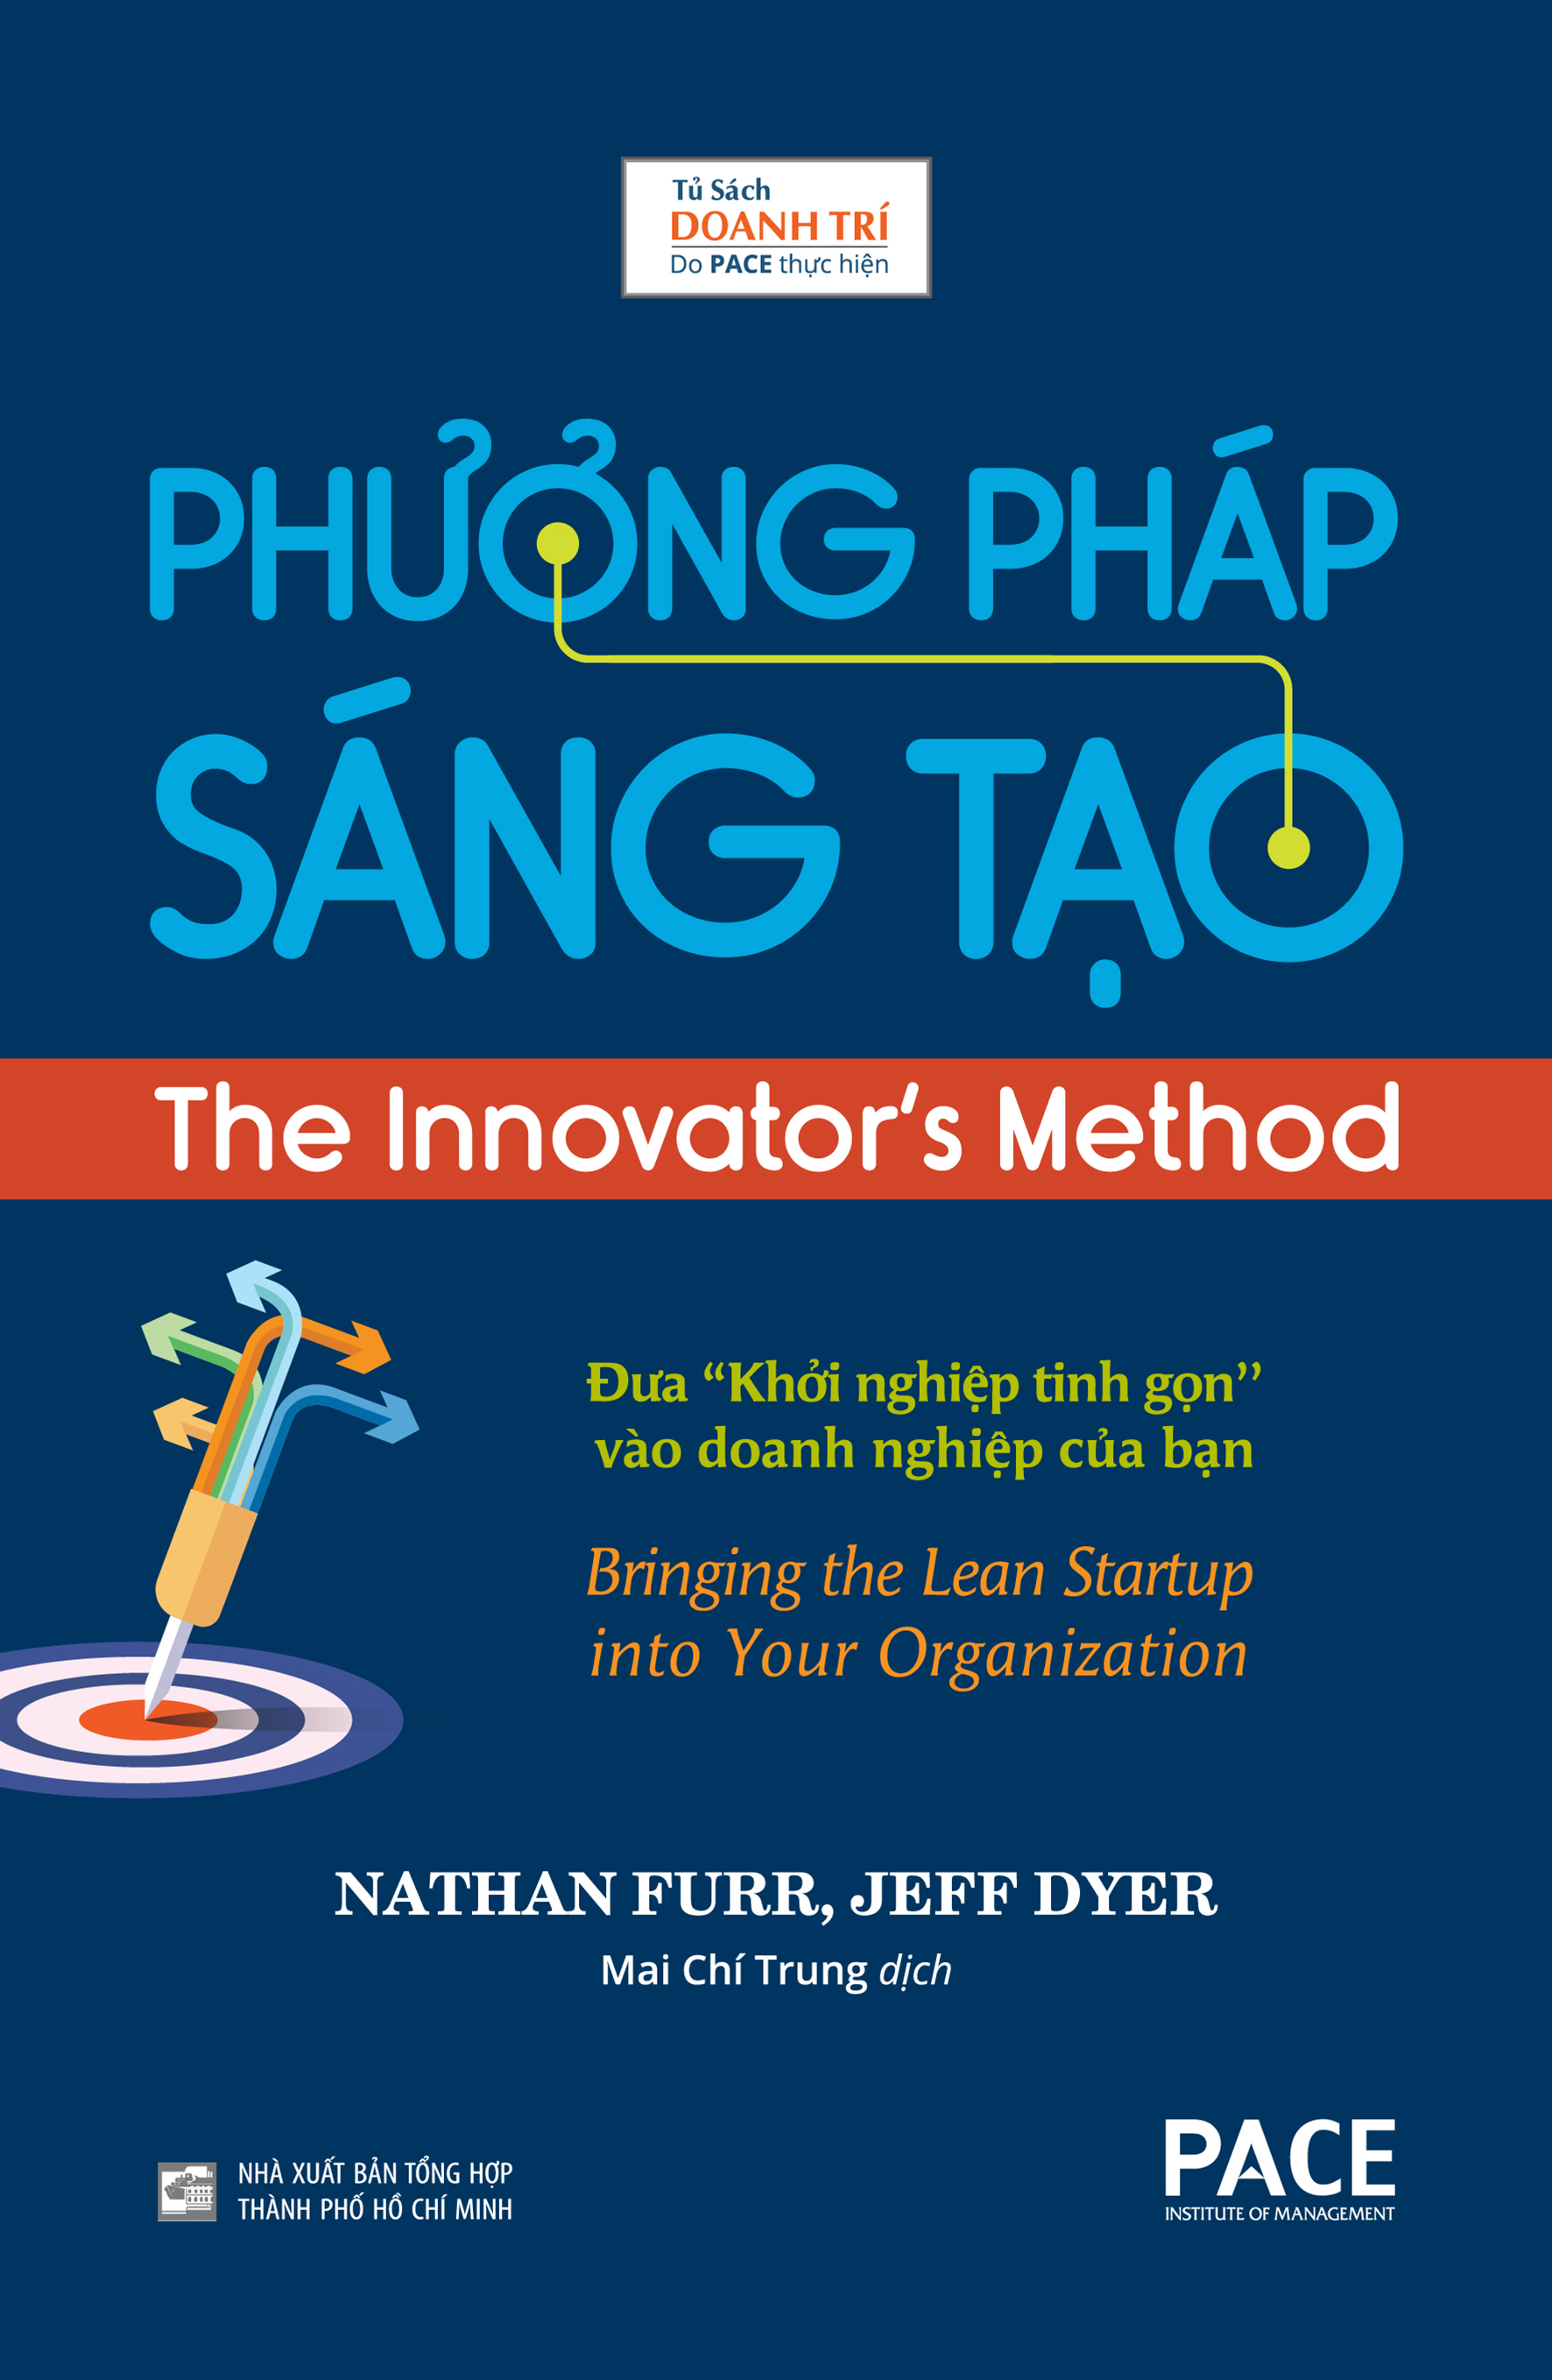 PHƯƠNG PHÁP SÁNG TẠO (The Innovator’s Method) - Nathan Furr, Jeff Dyer - Mai Chí Trung dịch - (bìa cứng)